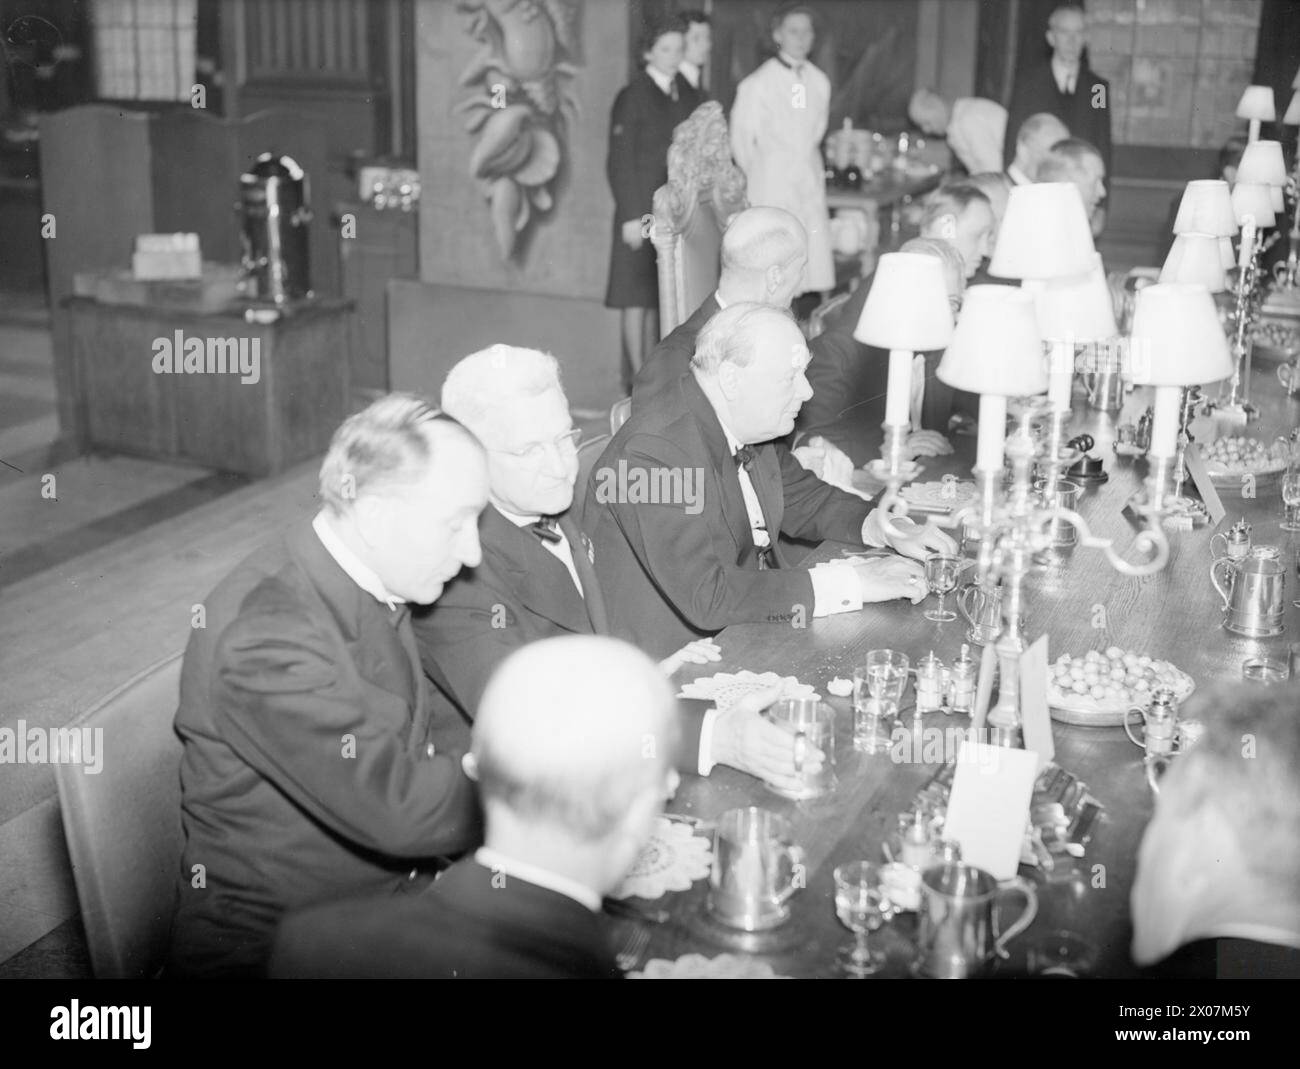 M. CHURCHILL ET LES CHEFS NAVALS DU GOUVERNEMENT DES ÉTATS-UNIS AU GREENWICH NAVAL COLLEGE. 24 JUILLET 1942. - Une scène pendant le dîner Banque D'Images